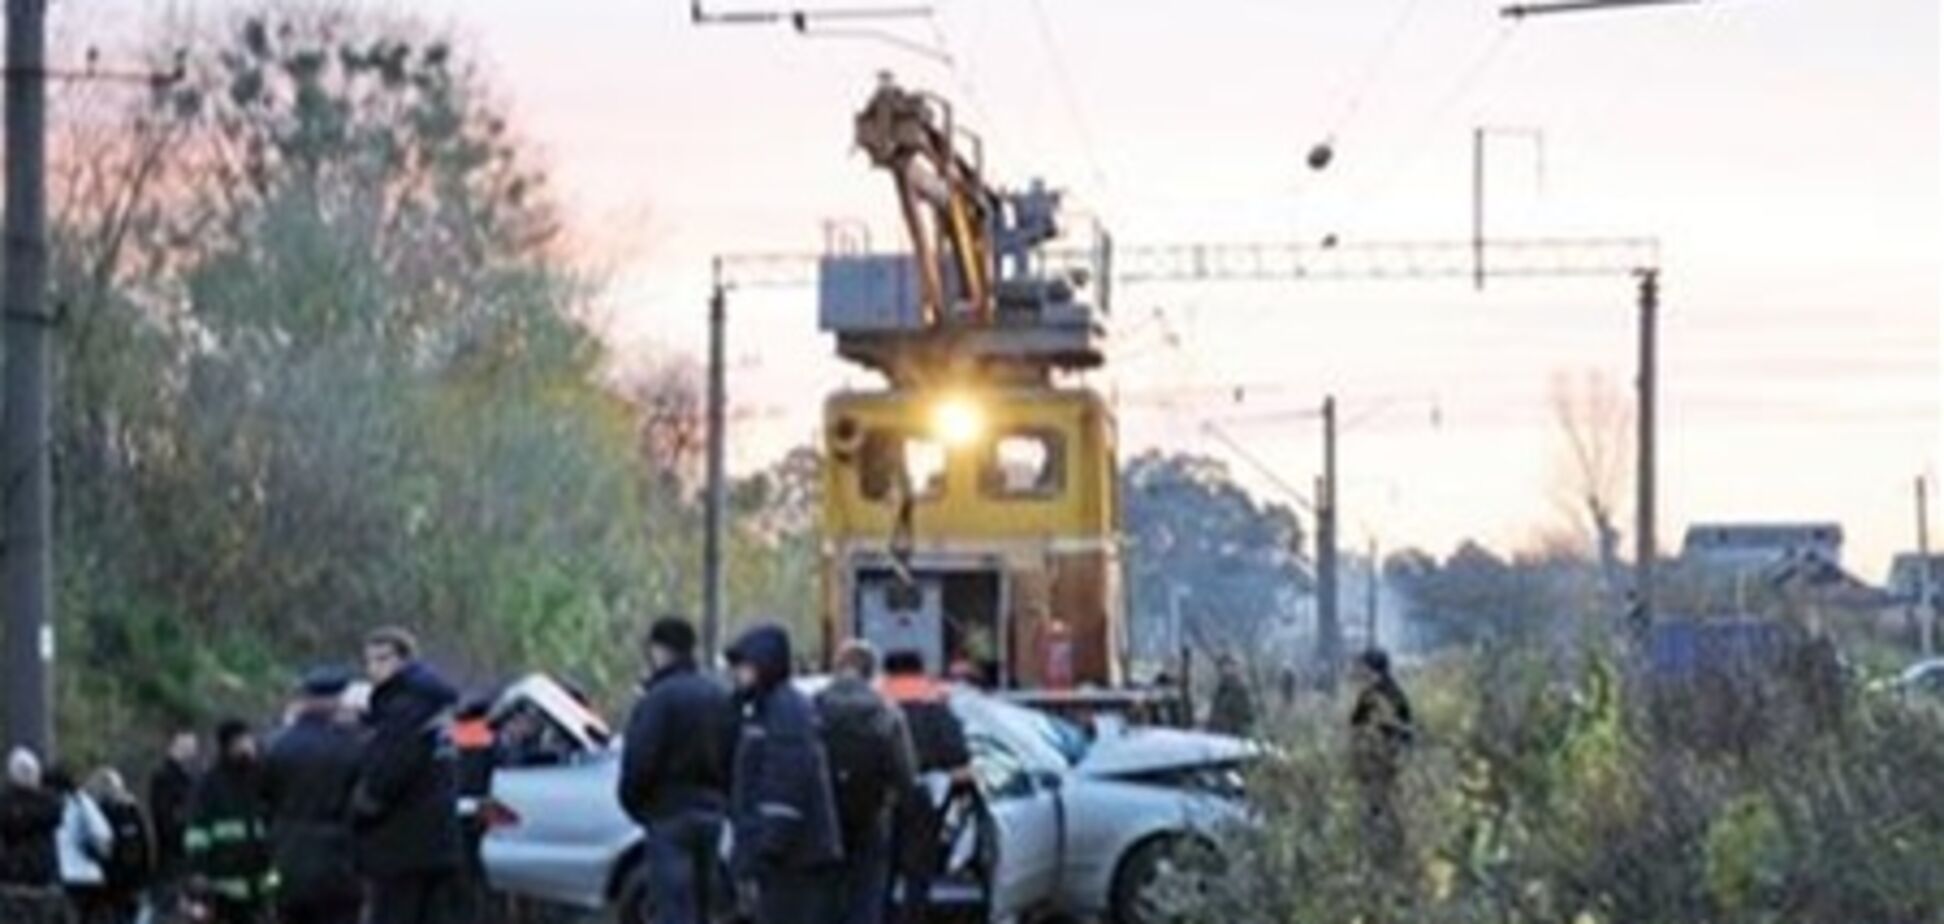 Дніпропетровщина. При зіткненні автомобіля з потягом загинули 2 людини